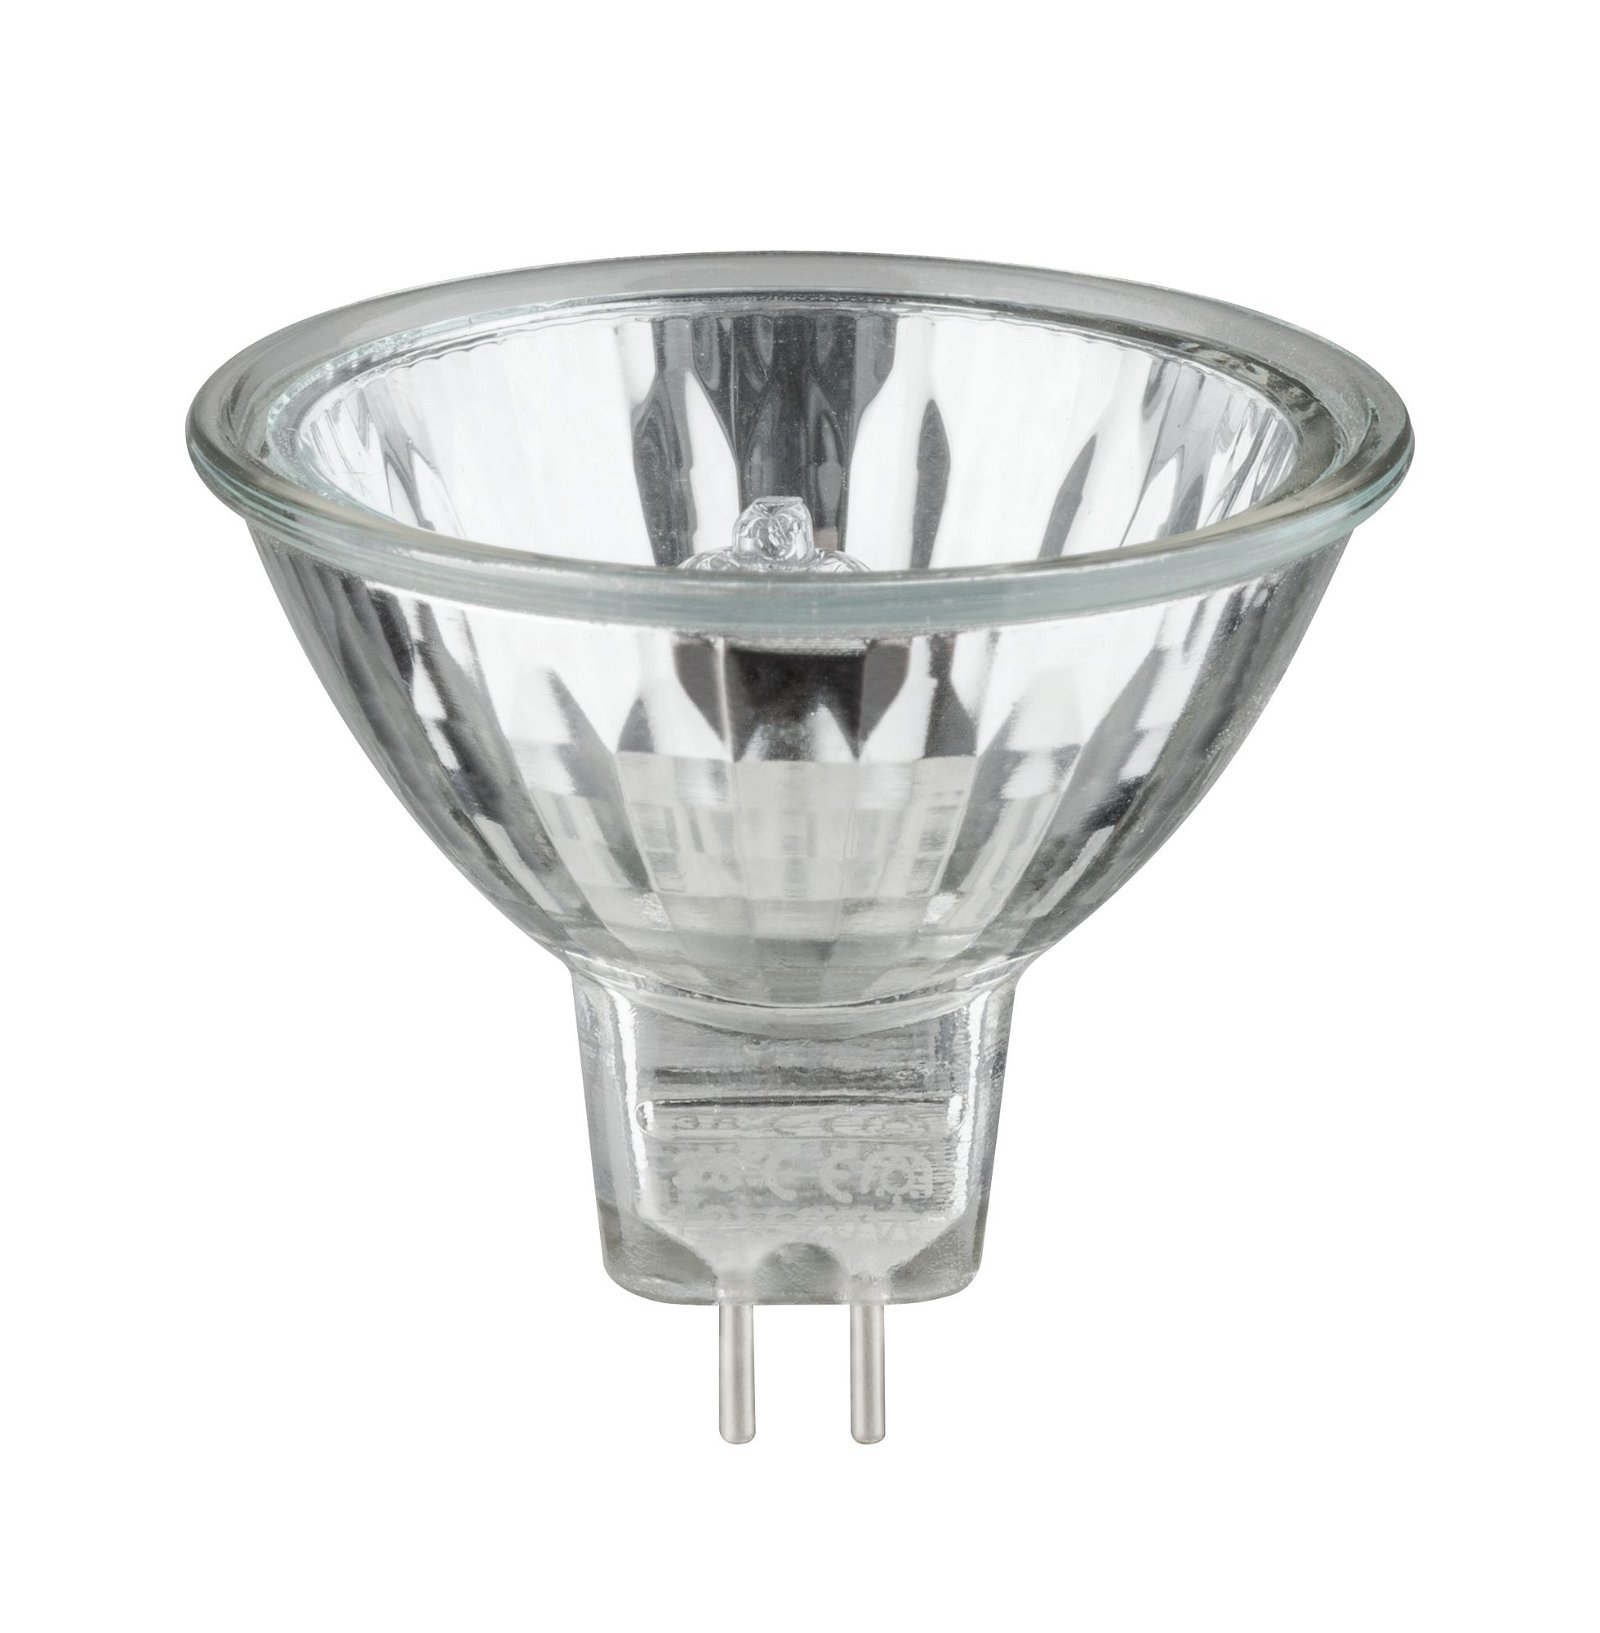 Low-voltage halogen reflector lamp, security 50 W GU5.3, silver 12 V